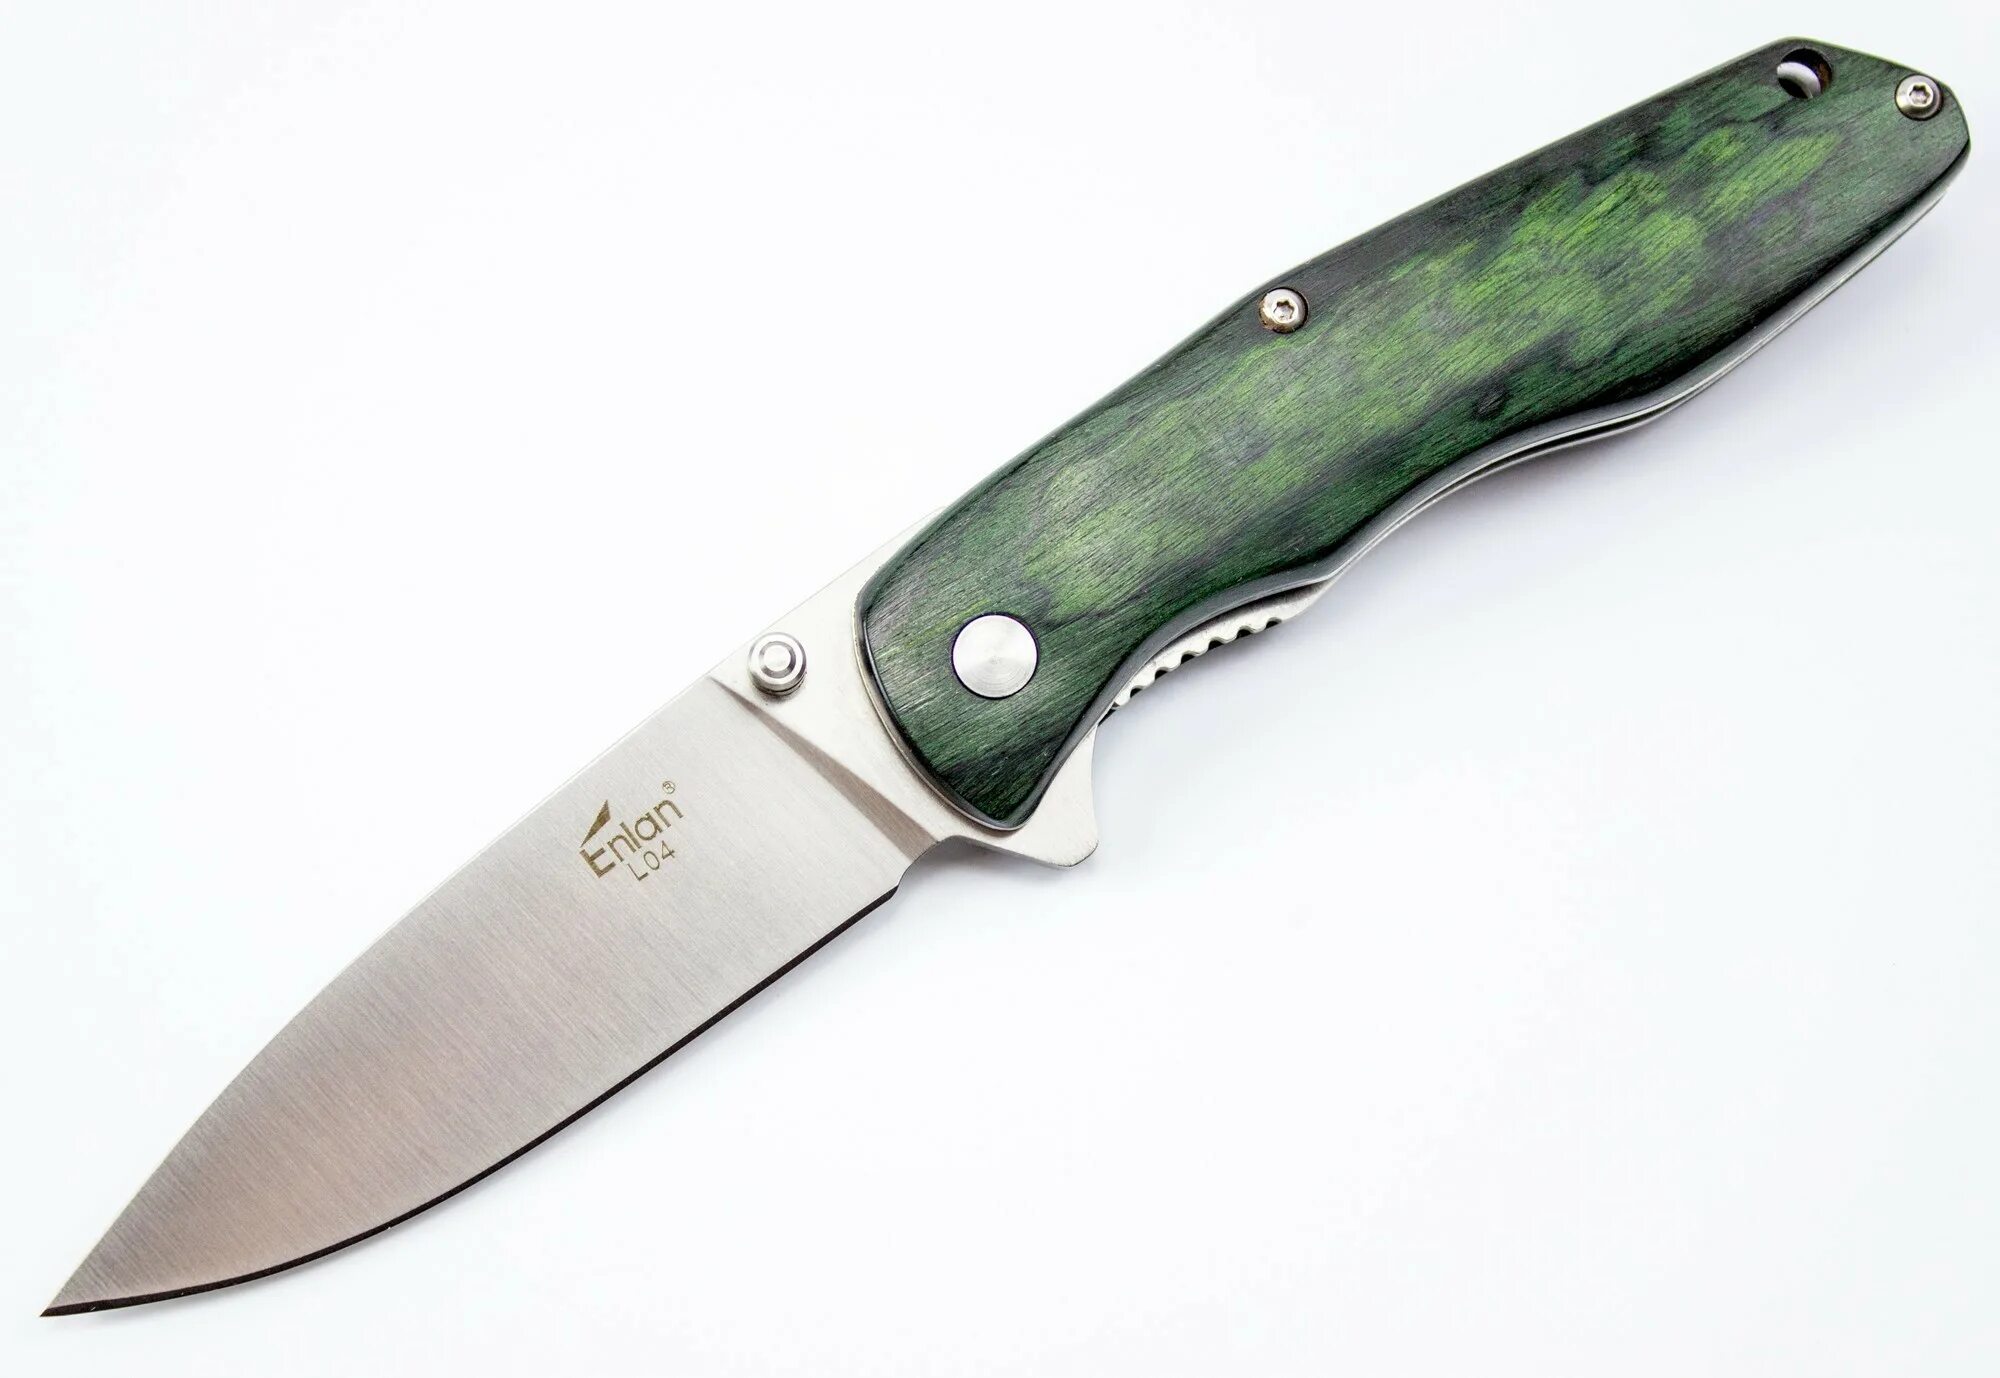 Enlan eg002. Складной нож Энлан. Enlan ew031 d2. Складной нож Cat model# 9800121g. Ножи калининград купить